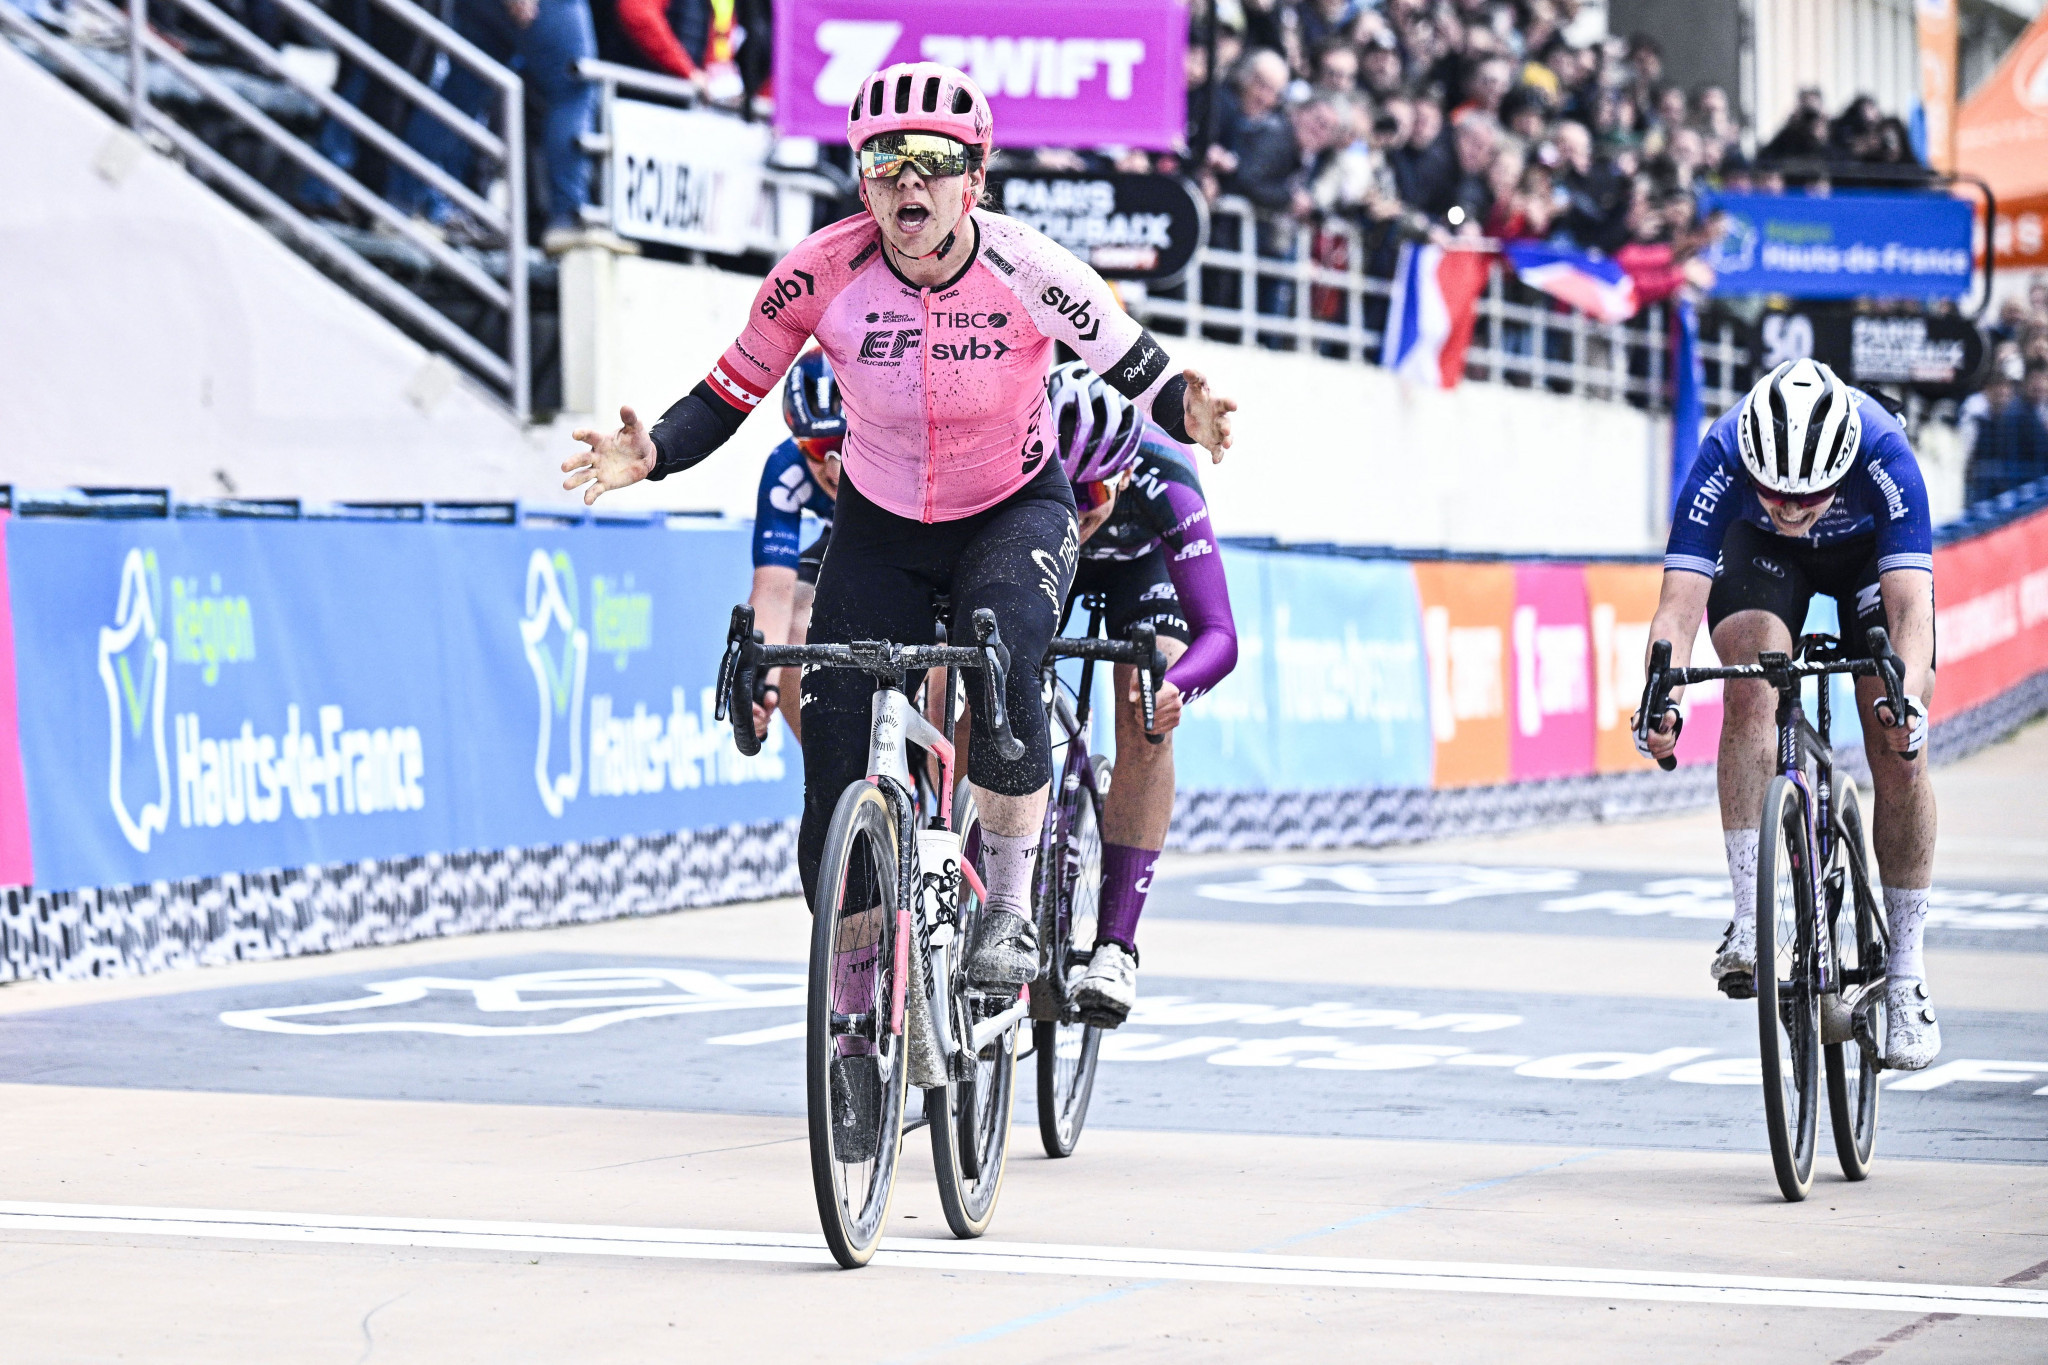 Jackson a surprise Paris-Roubaix Femmes winner after crashes hit favourites